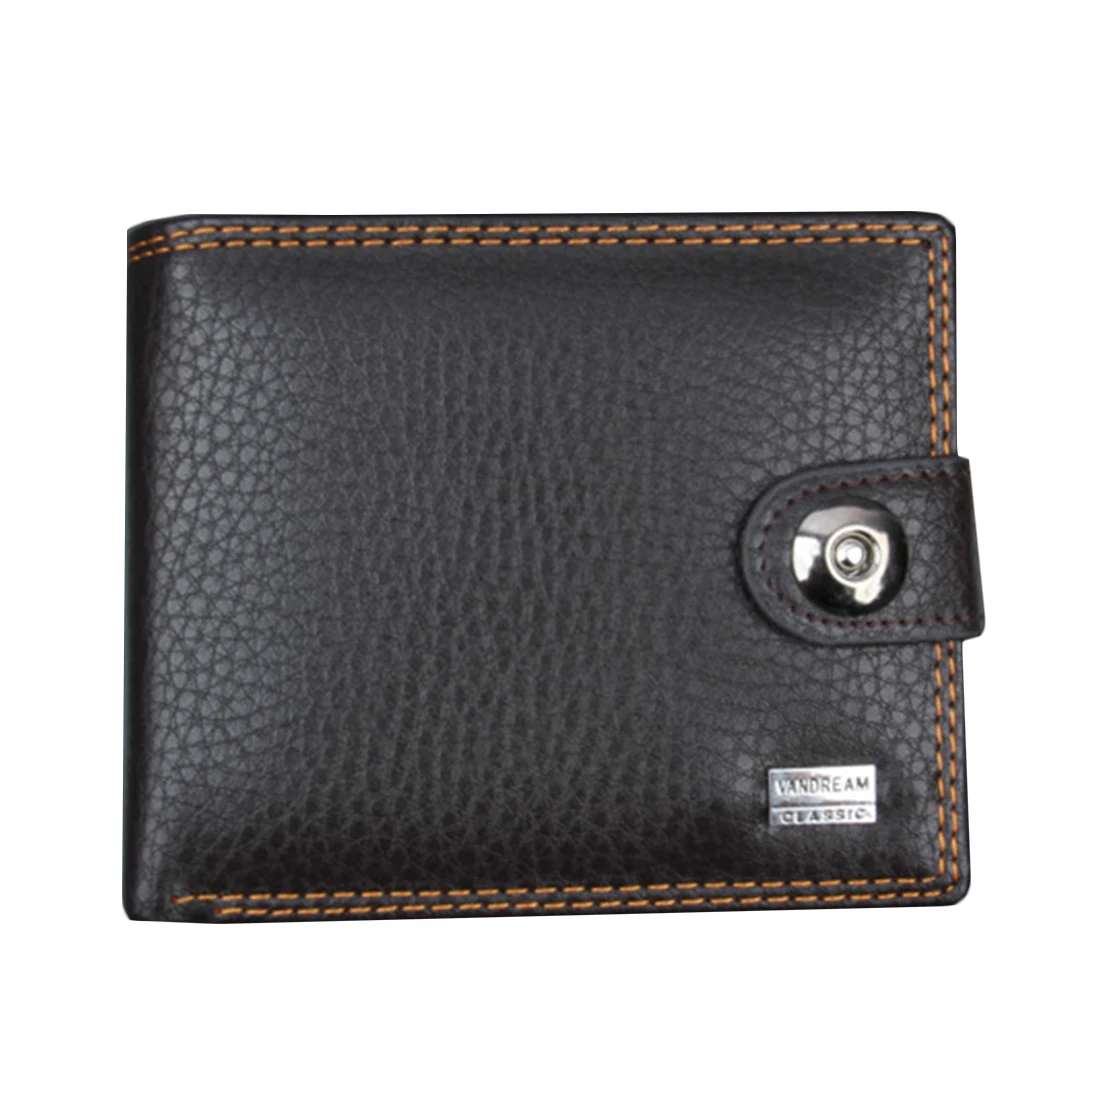 Фото Emarald короткий кошелек деловые мужские кошельки и кожаный бумажник удобные личные